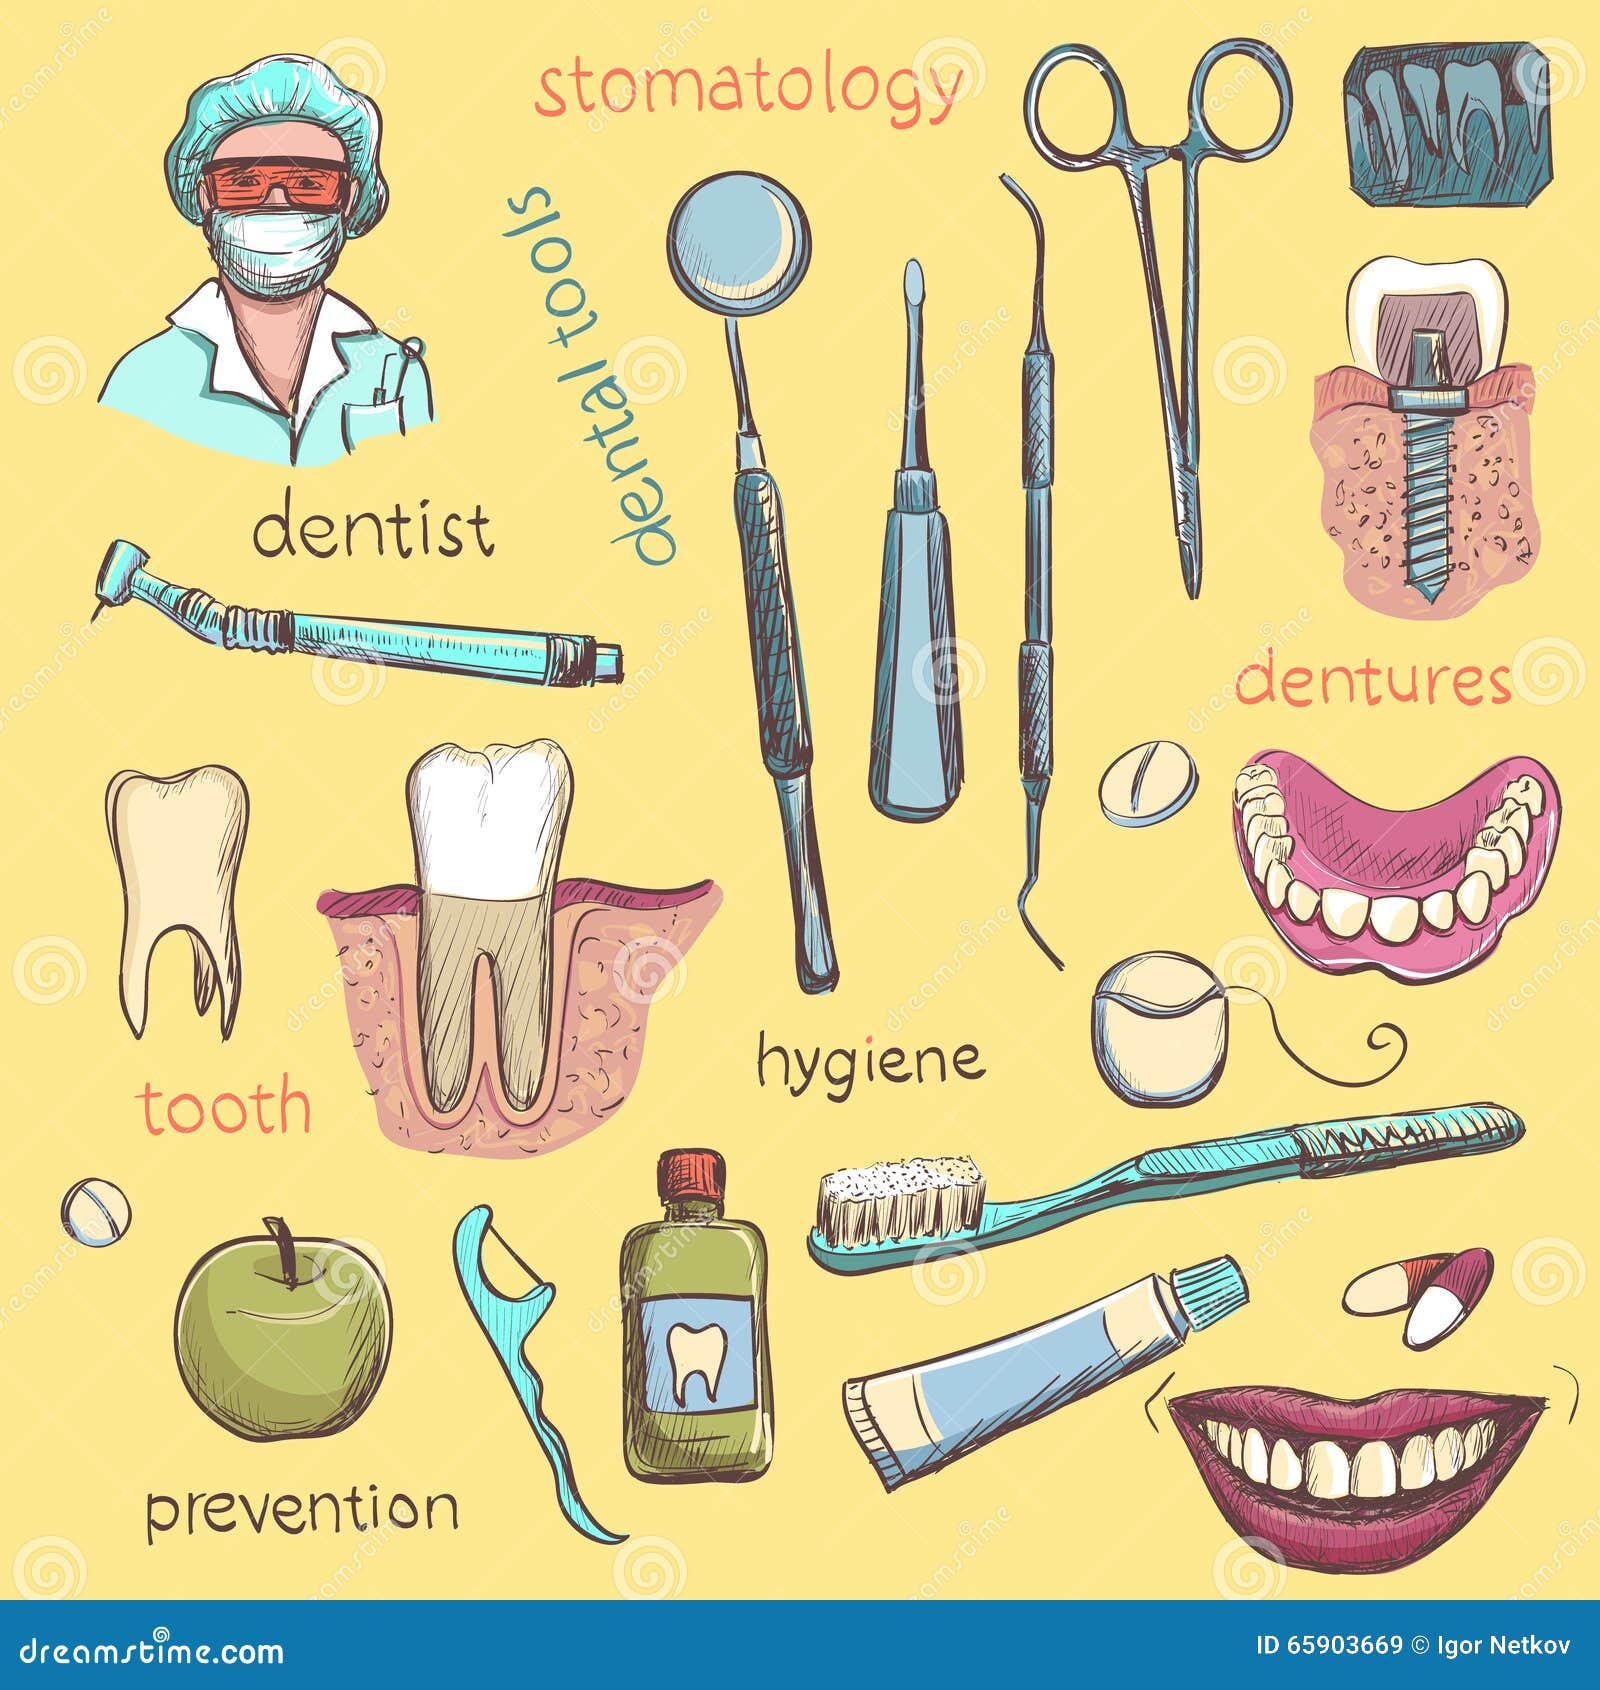 Рта какие предметы. Предметы стоматолога. Инструменты стоматолога для детей. Инструменты зубного врача. Названия инструментов дантиста для детей.